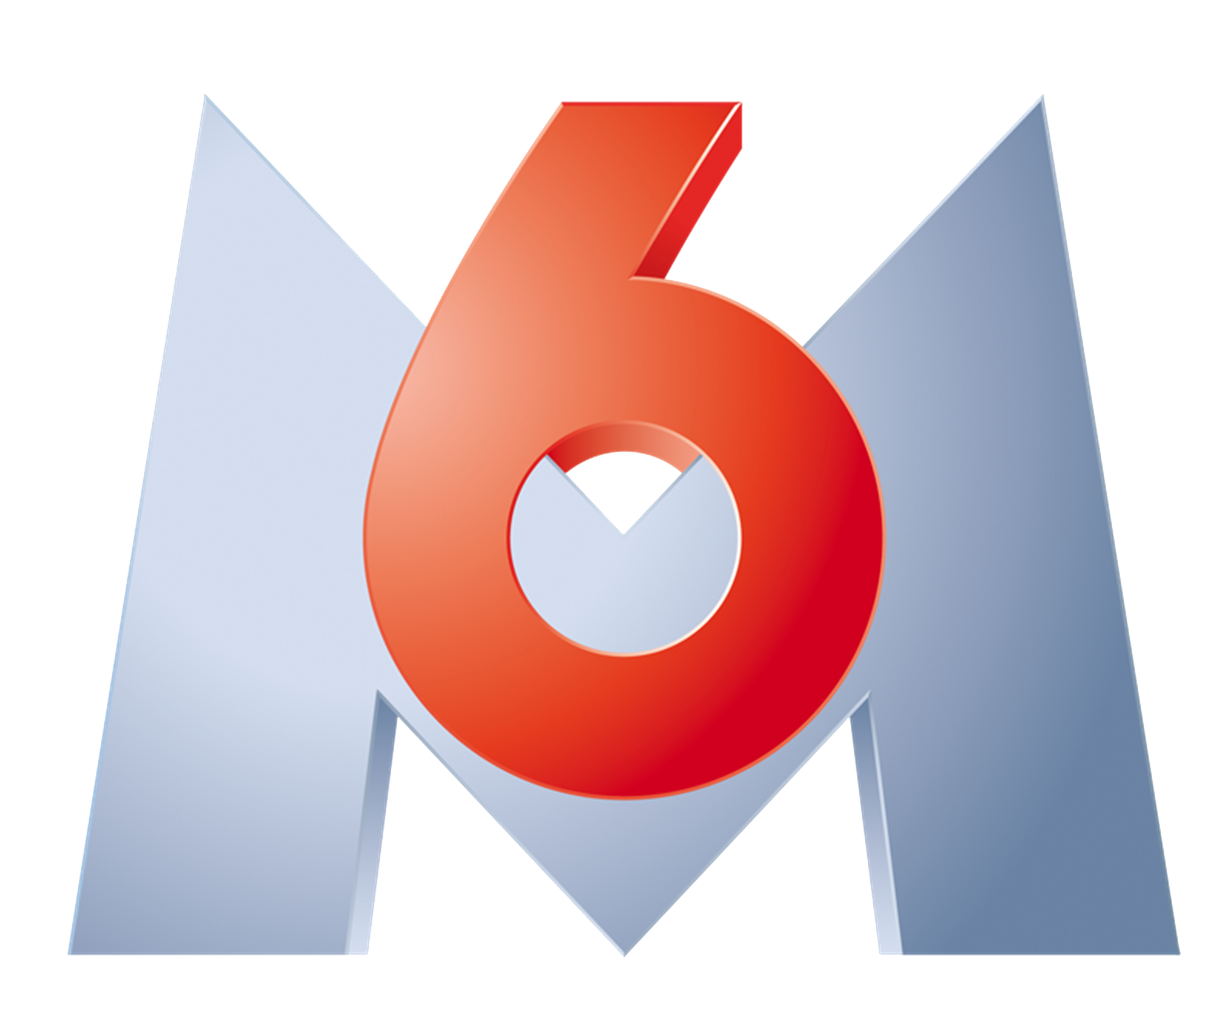 M6 tv logo